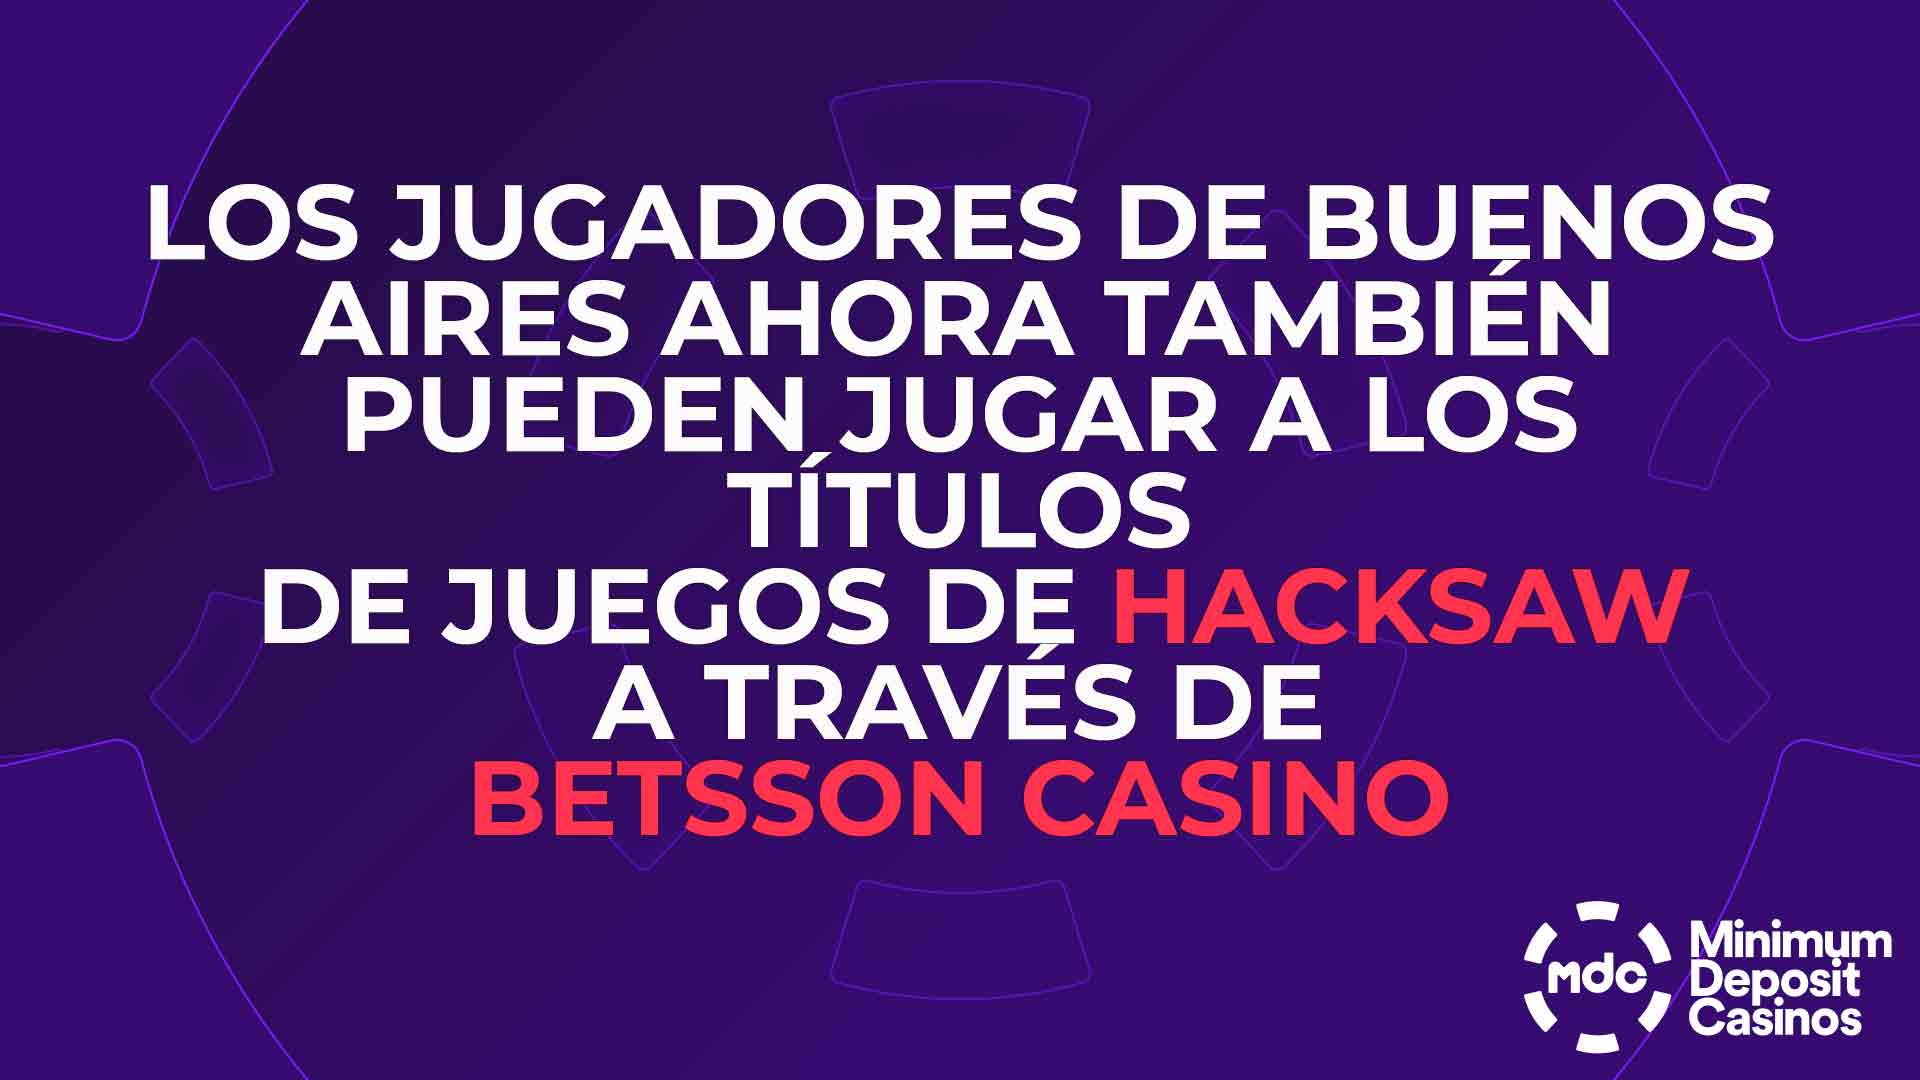 Los jugadores de Buenos Aires ahora también pueden jugar a los títulos de juegos de Hacksaw a través de Betsson Casino